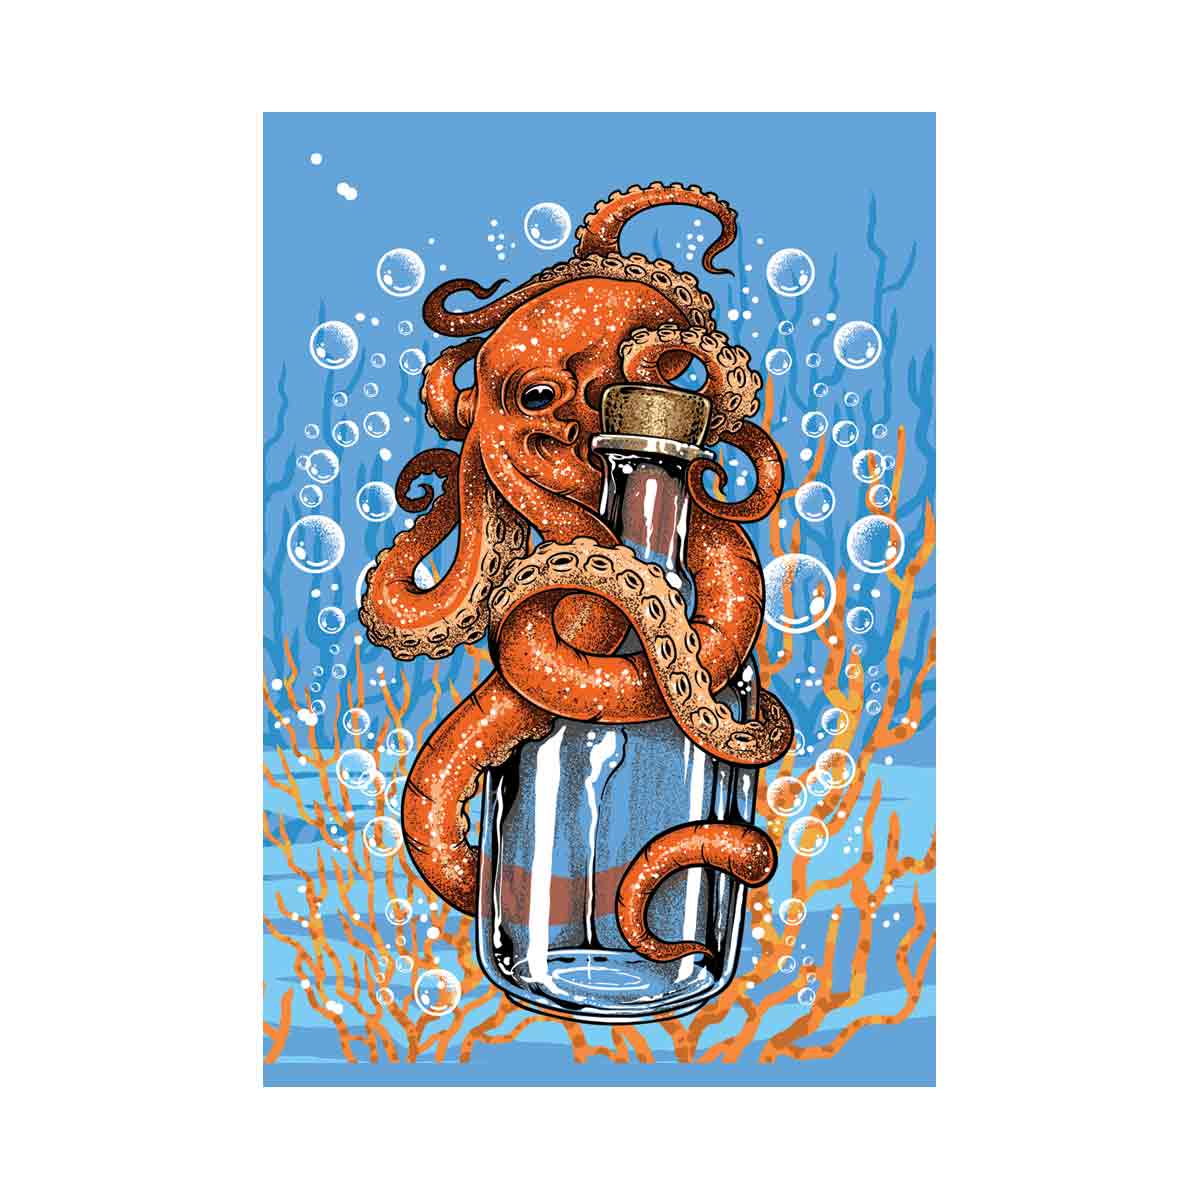 Octopus bottle - Rum runner